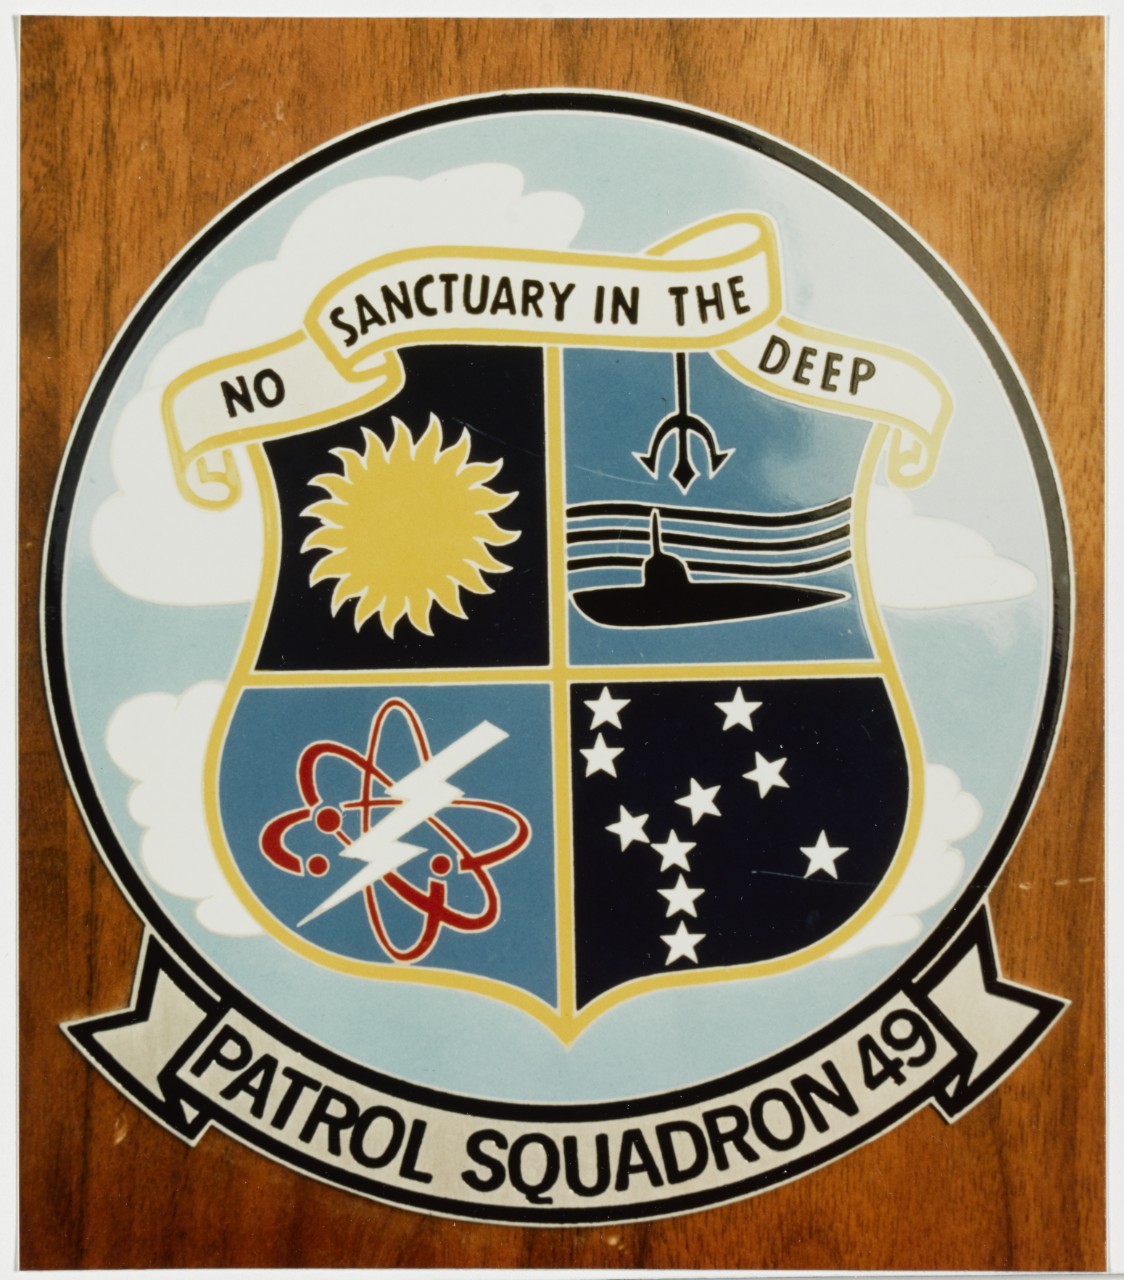 Insignia: Patrol Squadron 49 "No Sanctuary in the Deep".